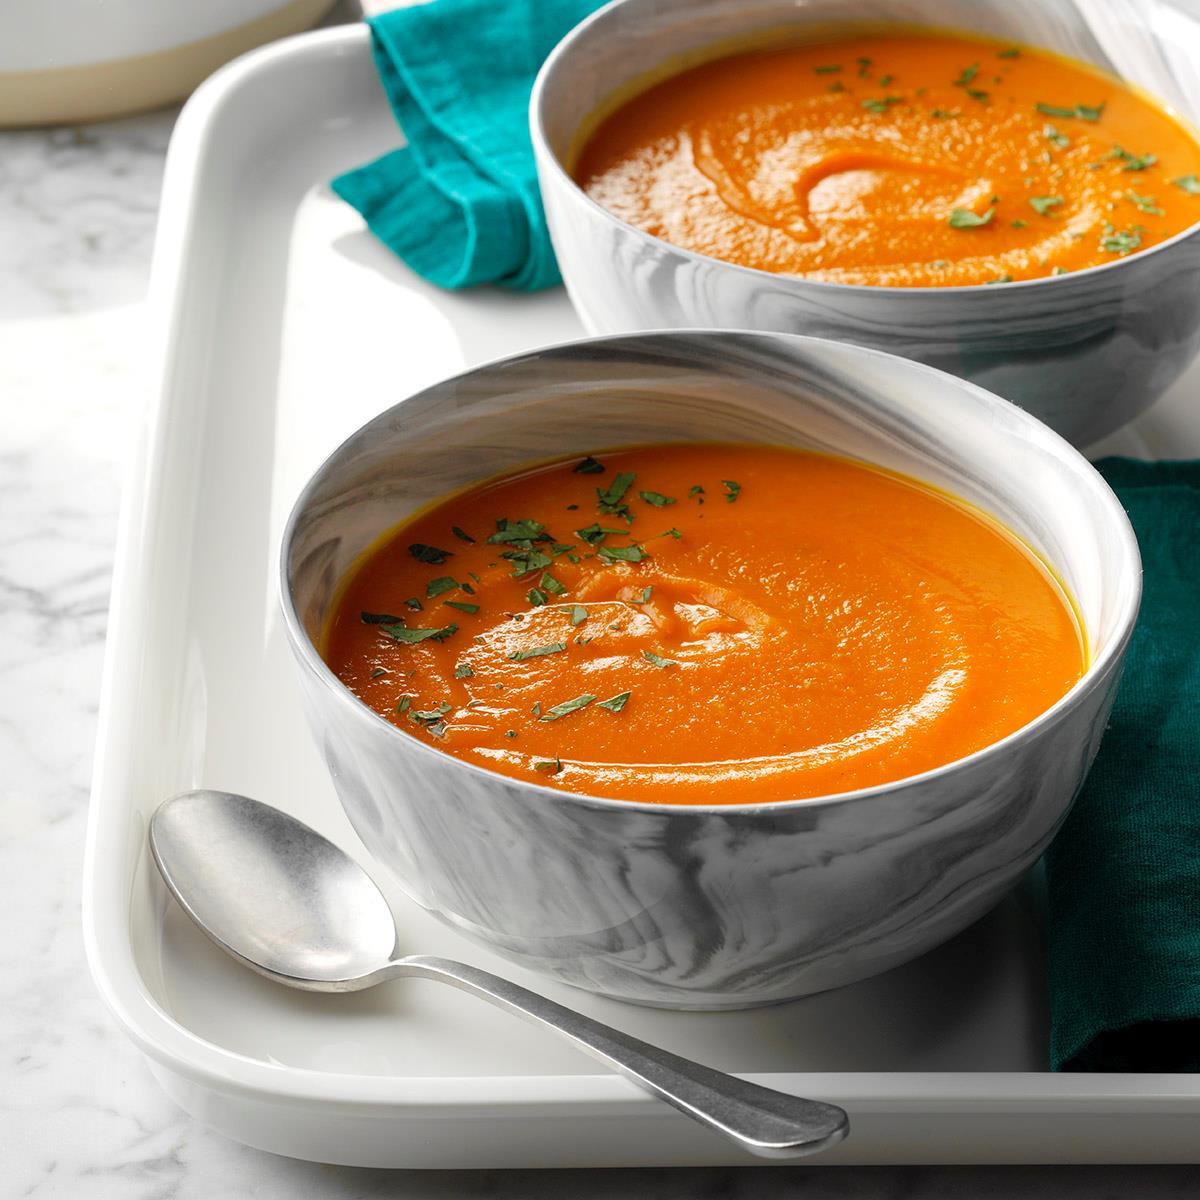 40 Classic Homemade Soup Recipes